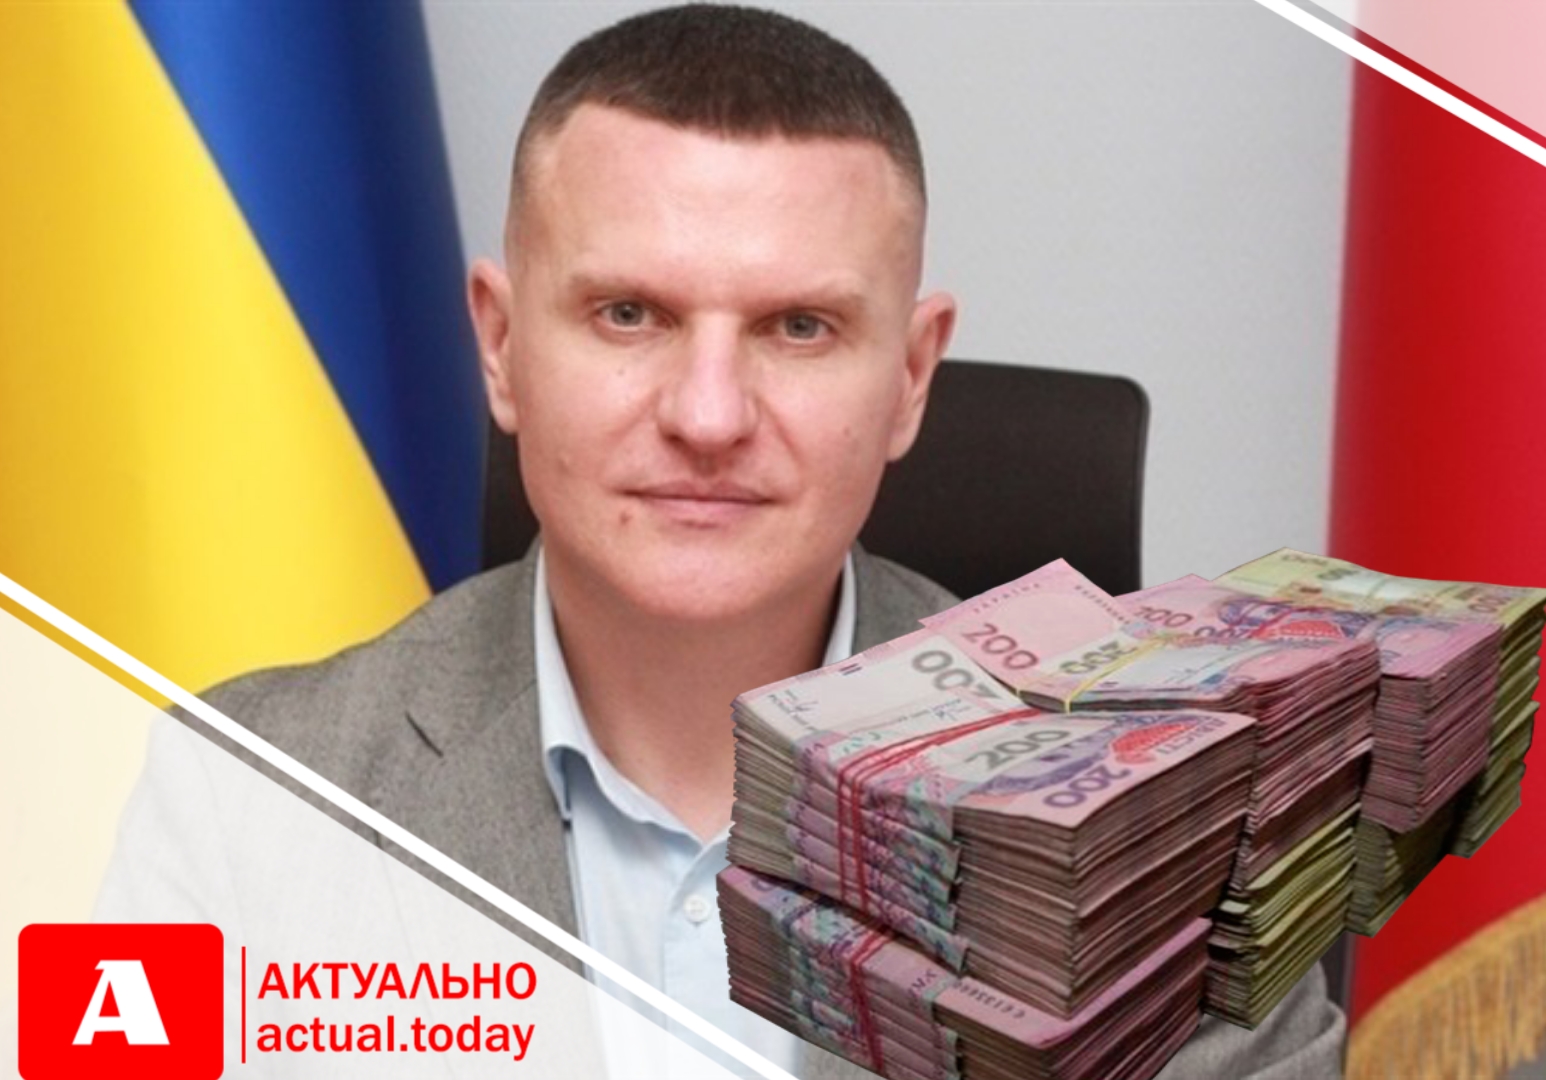 НАЗК виявило ознаки незаконного збагачення в.о. міського голови Запоріжжя Анатолія Куртєва на понад 9 млн.грн